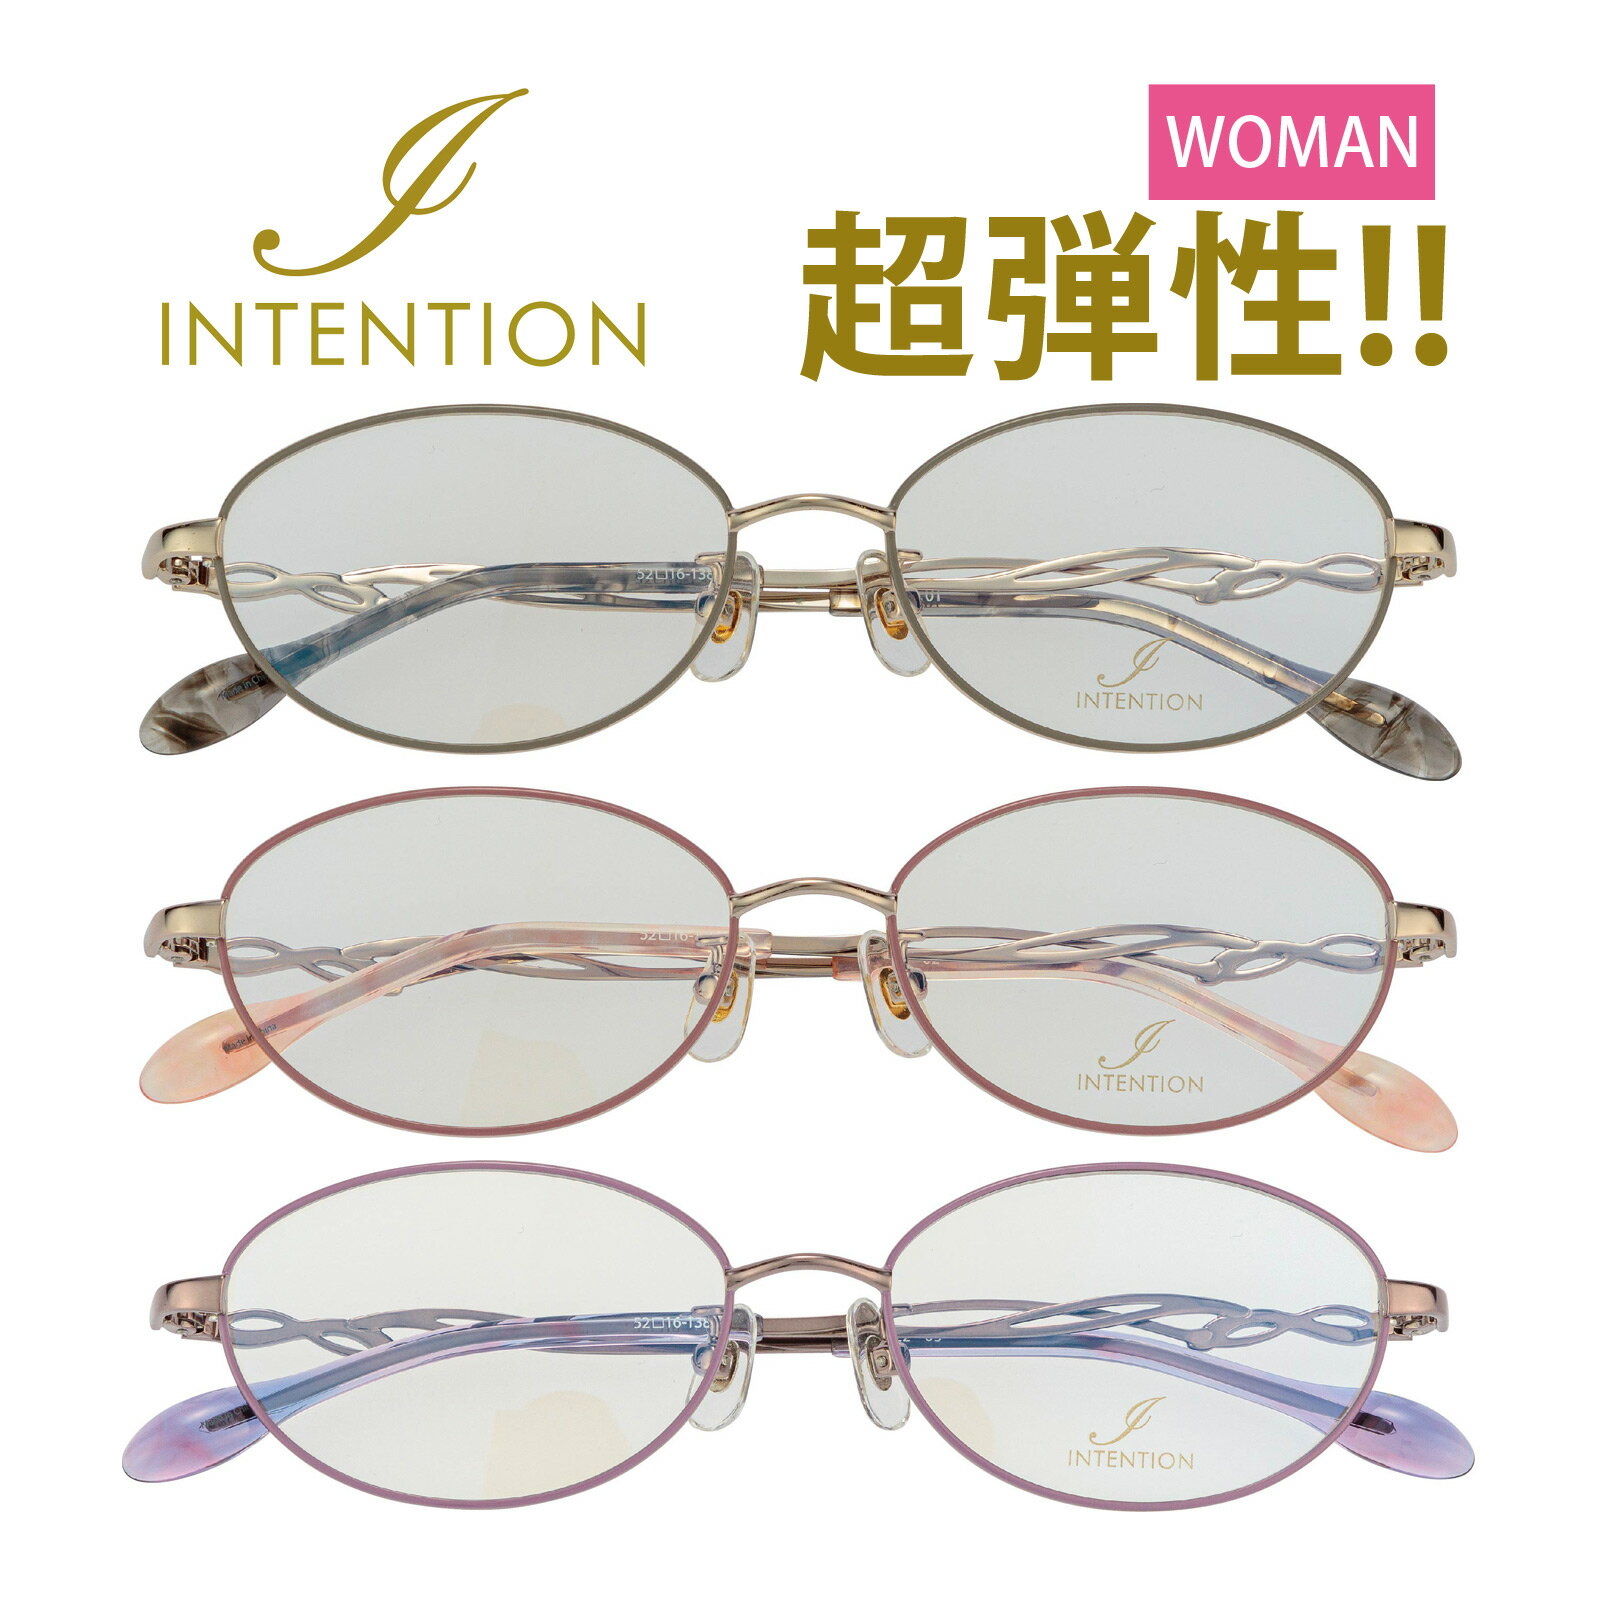 メガネフレームのみ インテンション 女性用 眼鏡 枠 レディース おしゃれ おすすめ メガネ フレーム オーバル型 ステンレス テンプル プレゼント ギフト